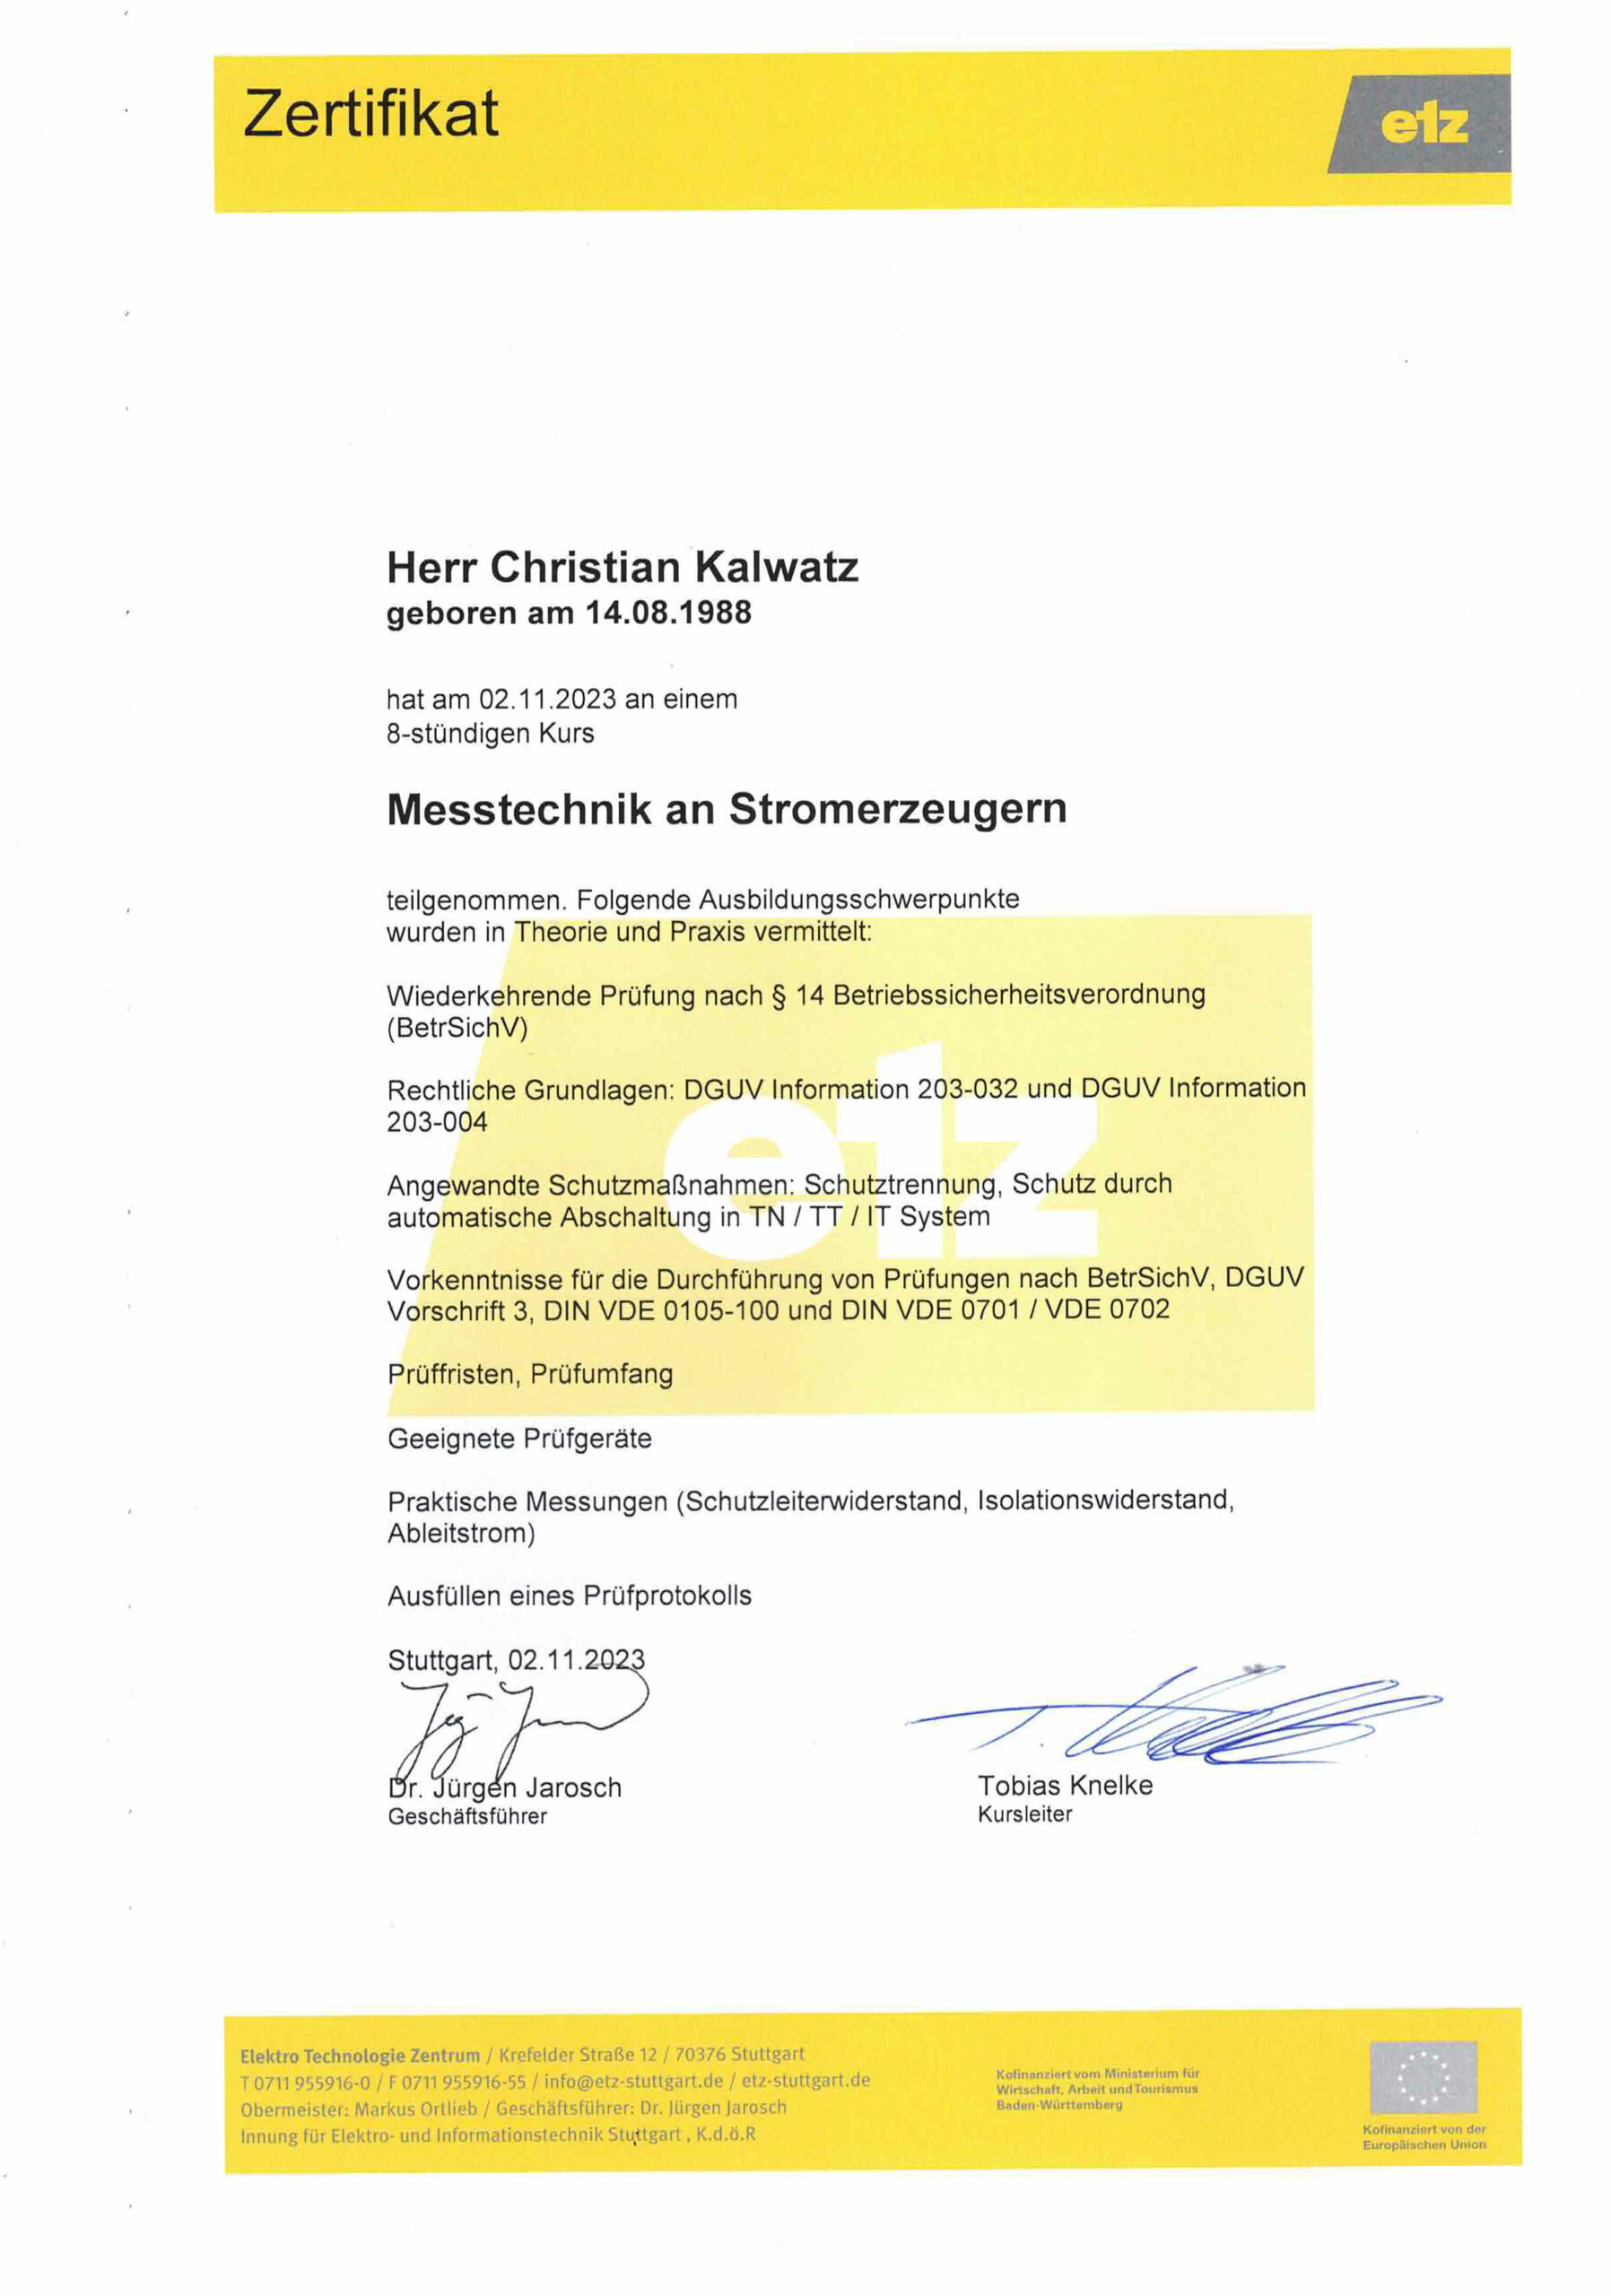 EBELING Technischer Großhandel - Zertifikat Messtechnik an Stromerzeugern (Christian Kalwatz) 02.11.2023